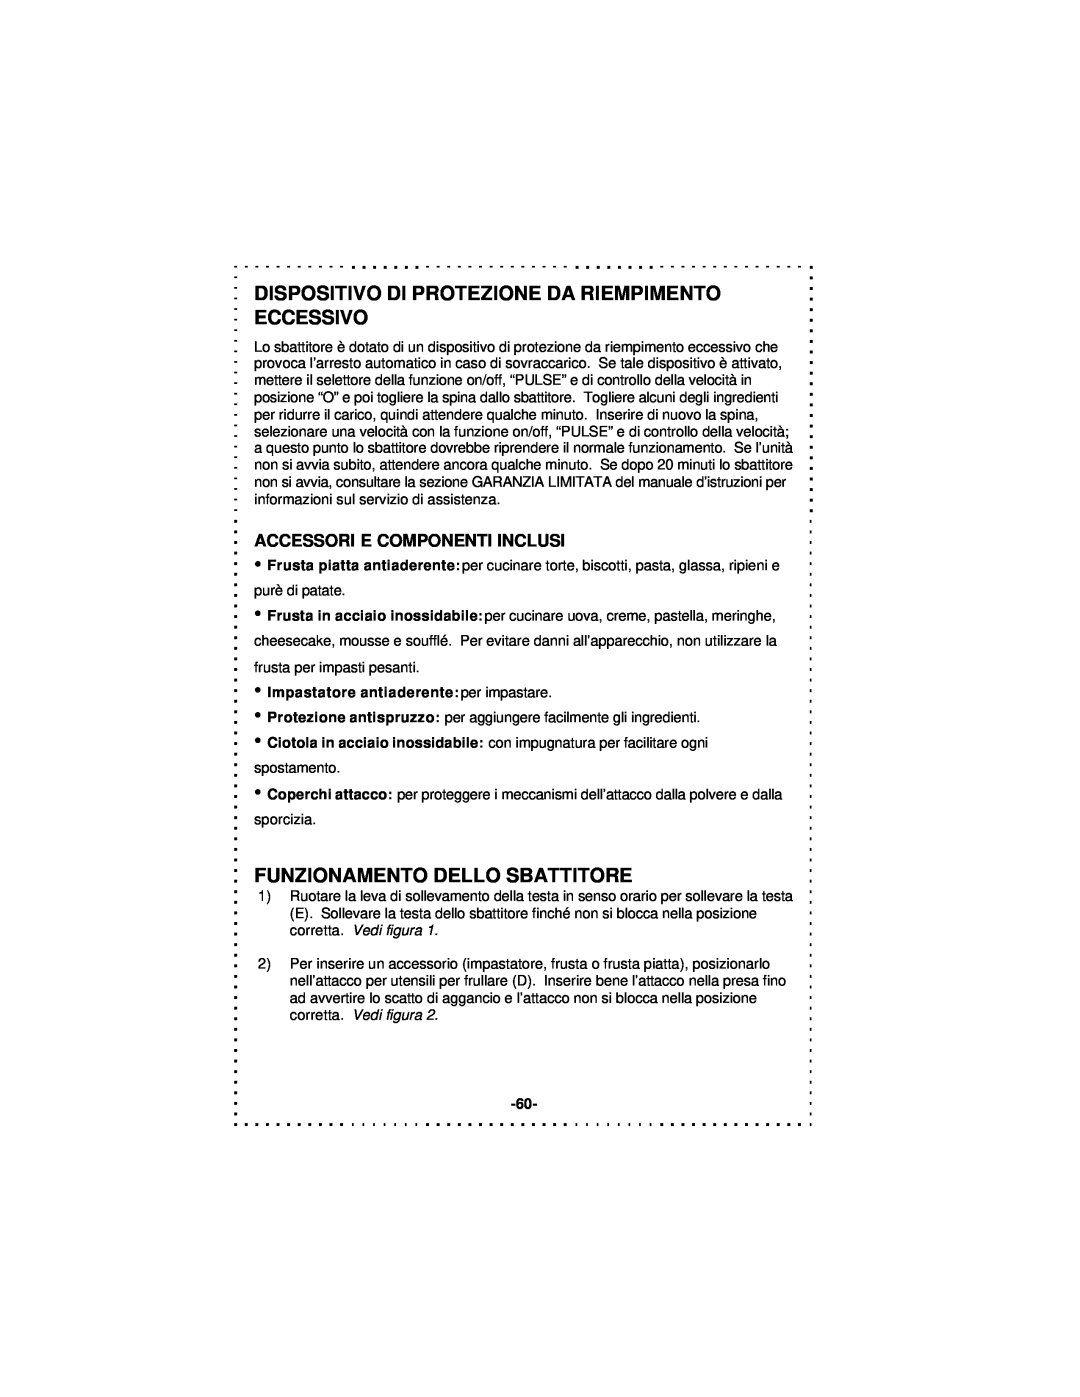 DeLonghi DSM5 - 7 Series instruction manual Funzionamento Dello Sbattitore, Accessori E Componenti Inclusi 